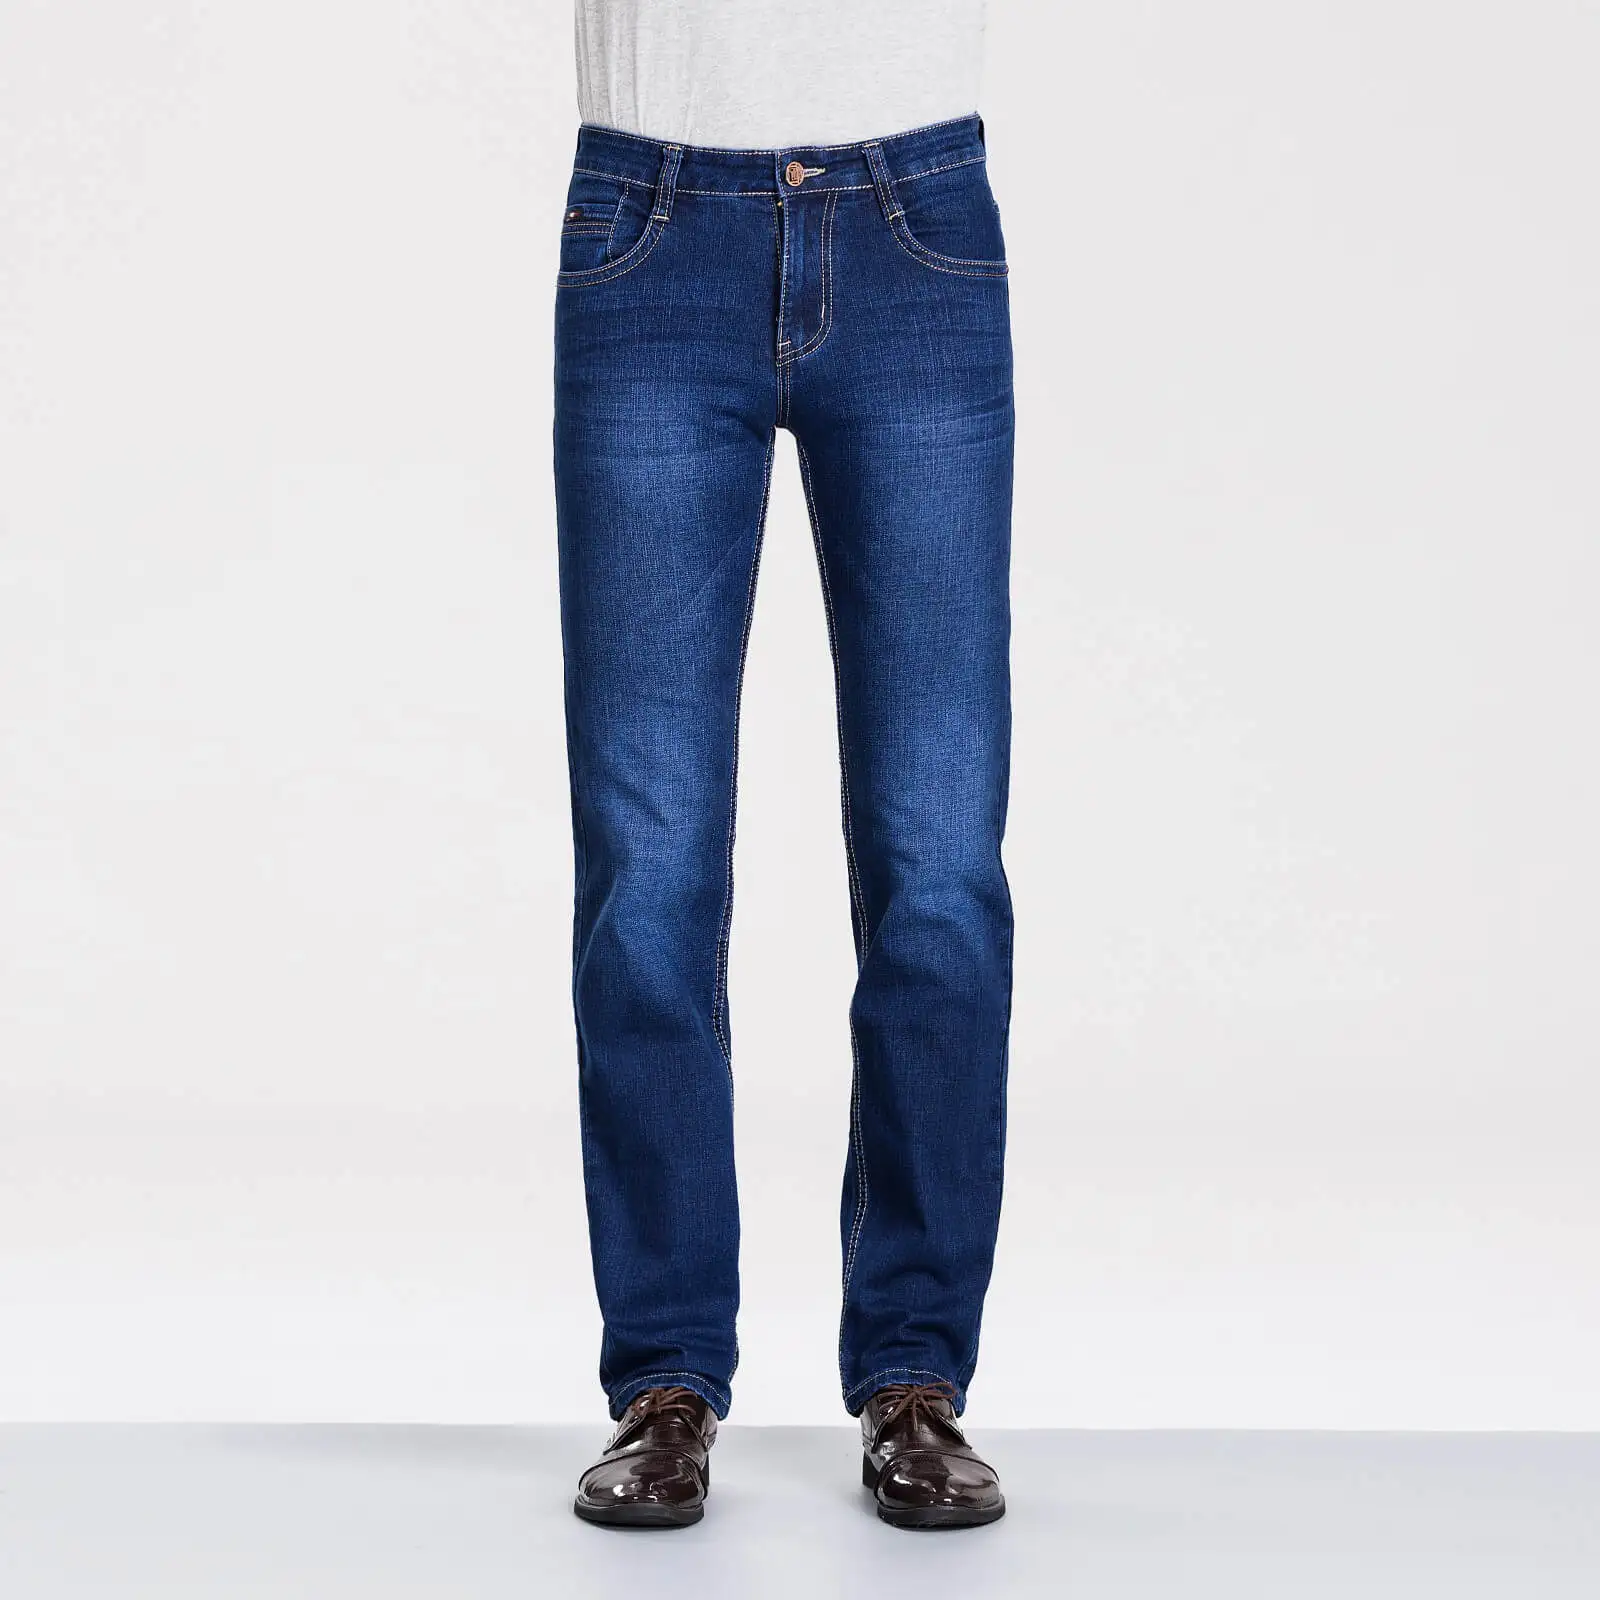 Макет бренд MPZ811 панк стиль прямые Dsq2 джинсы мужские осенние джинсовые брюки высокое качество vaqueeros узкие брюки